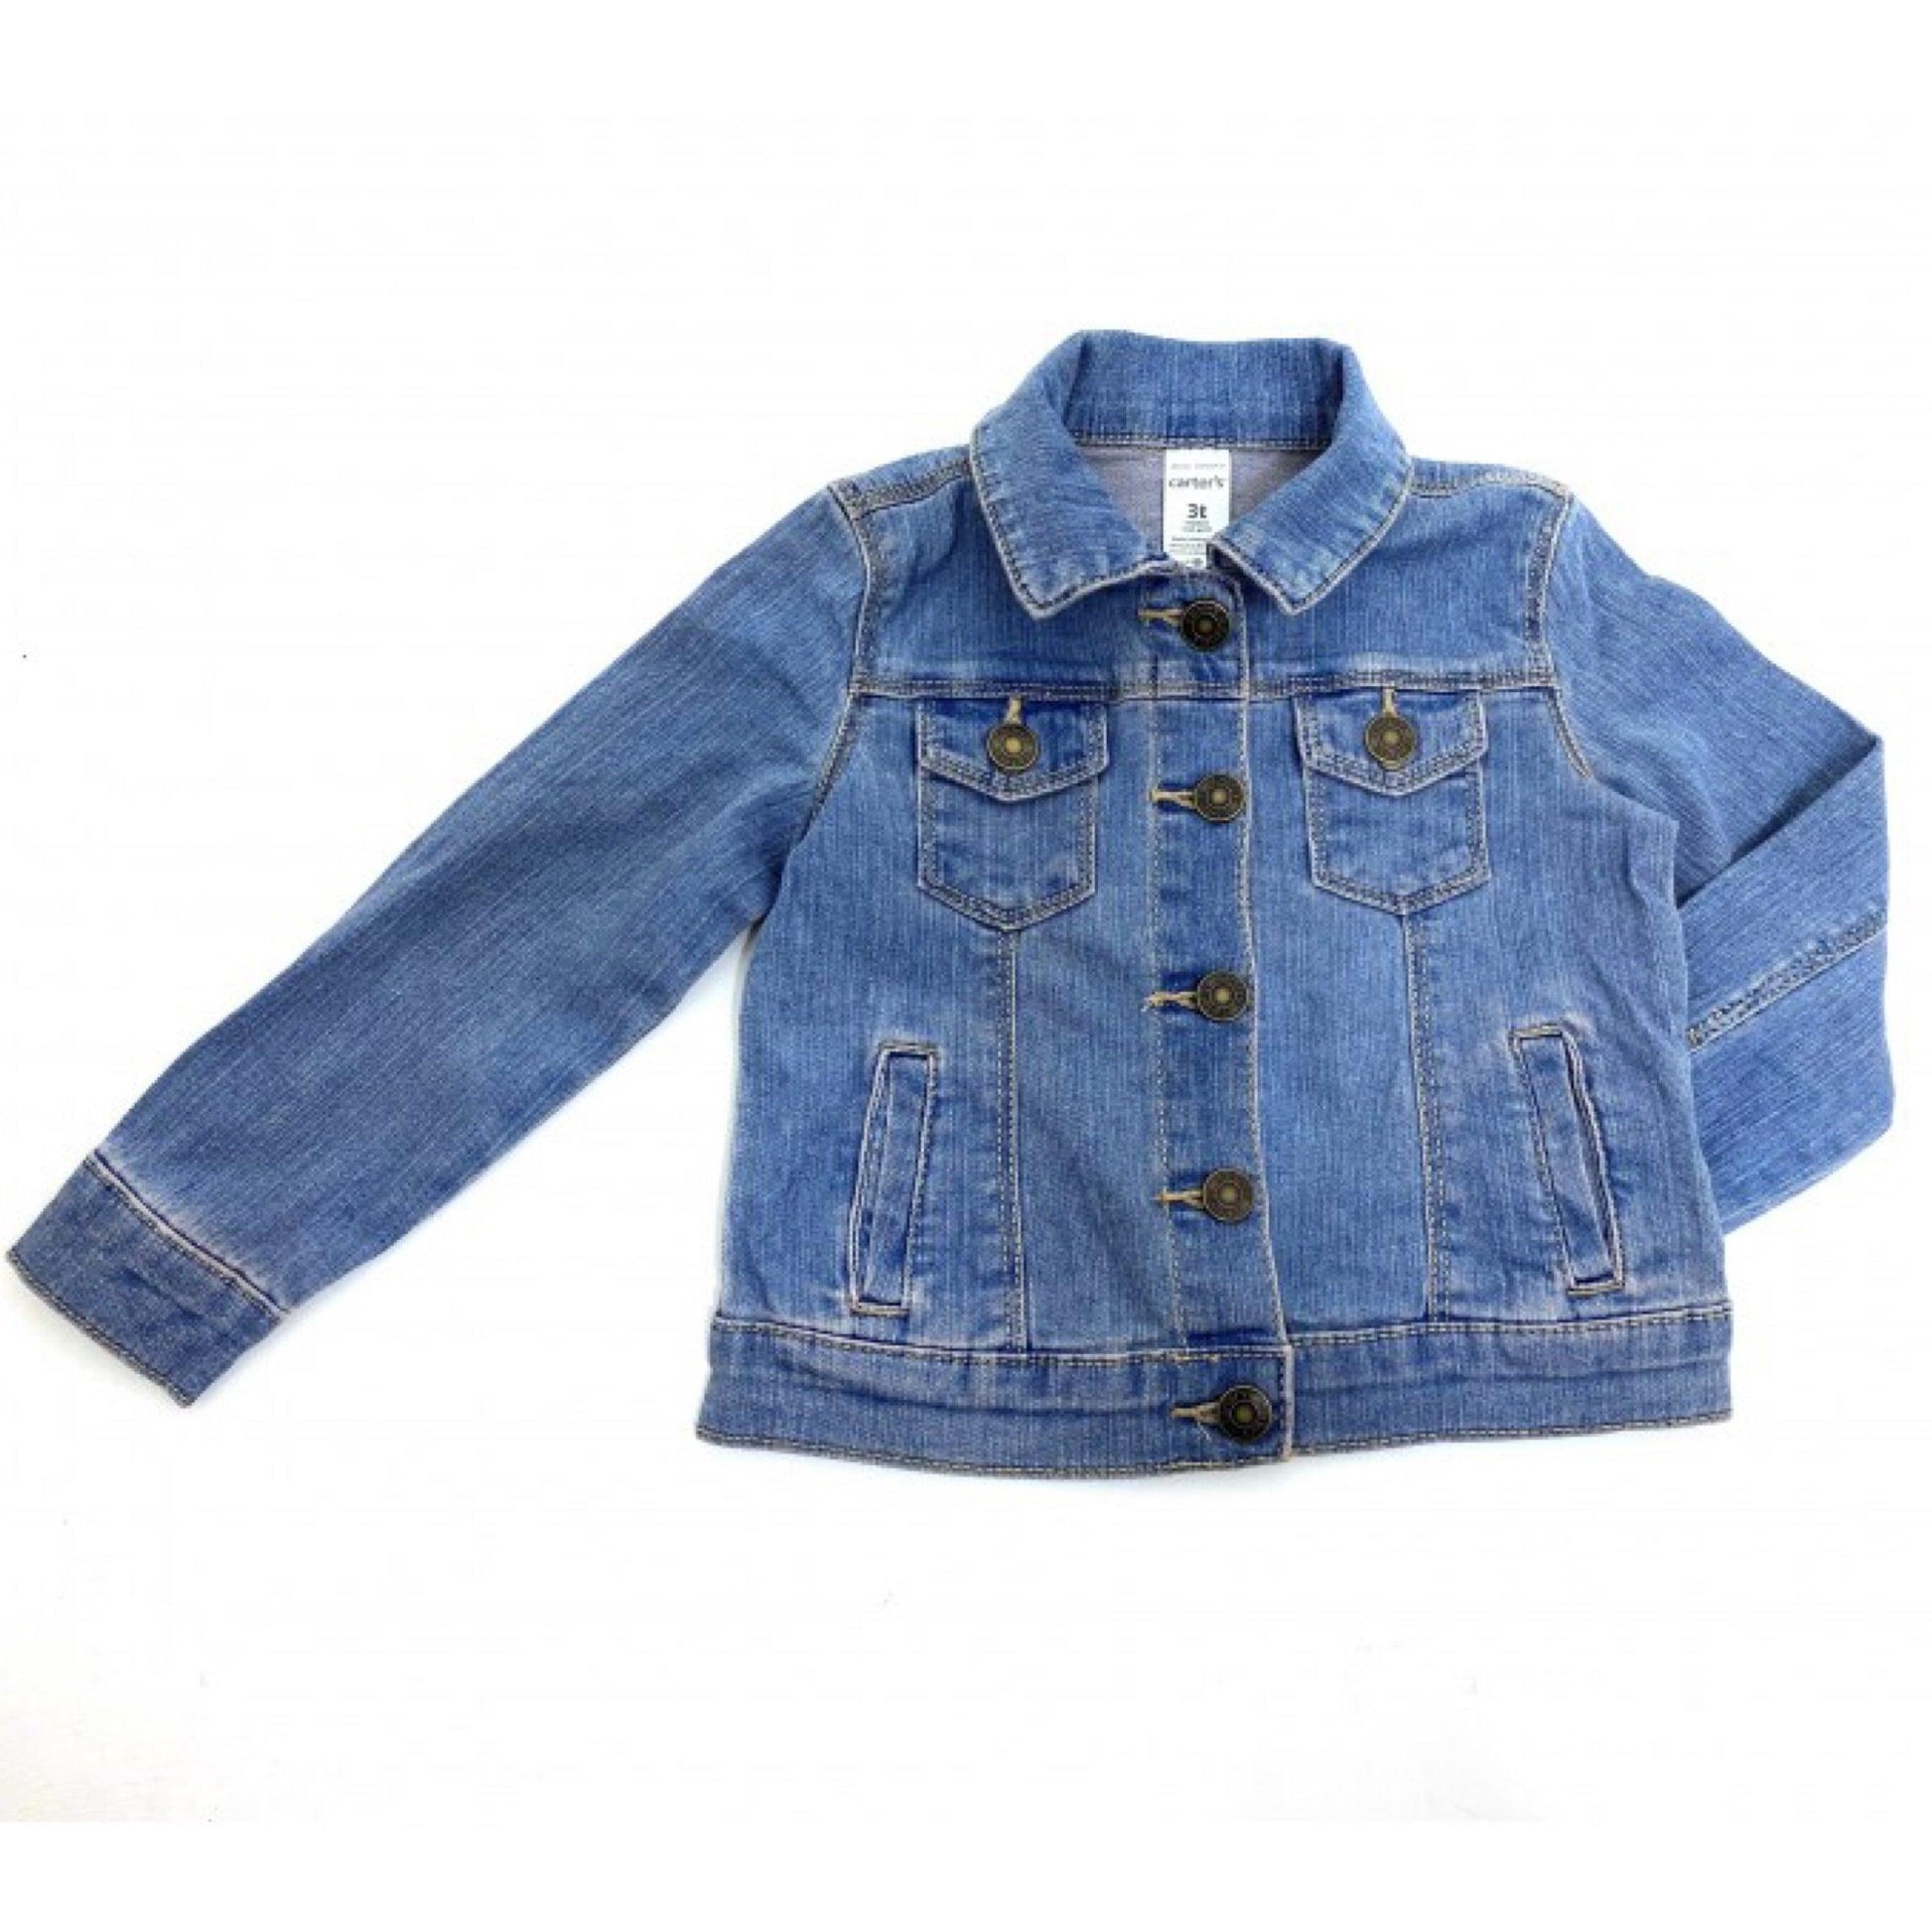 Girls Denim Jacket | Oscar & Me | Baby & Children’s Clothing & Accessories